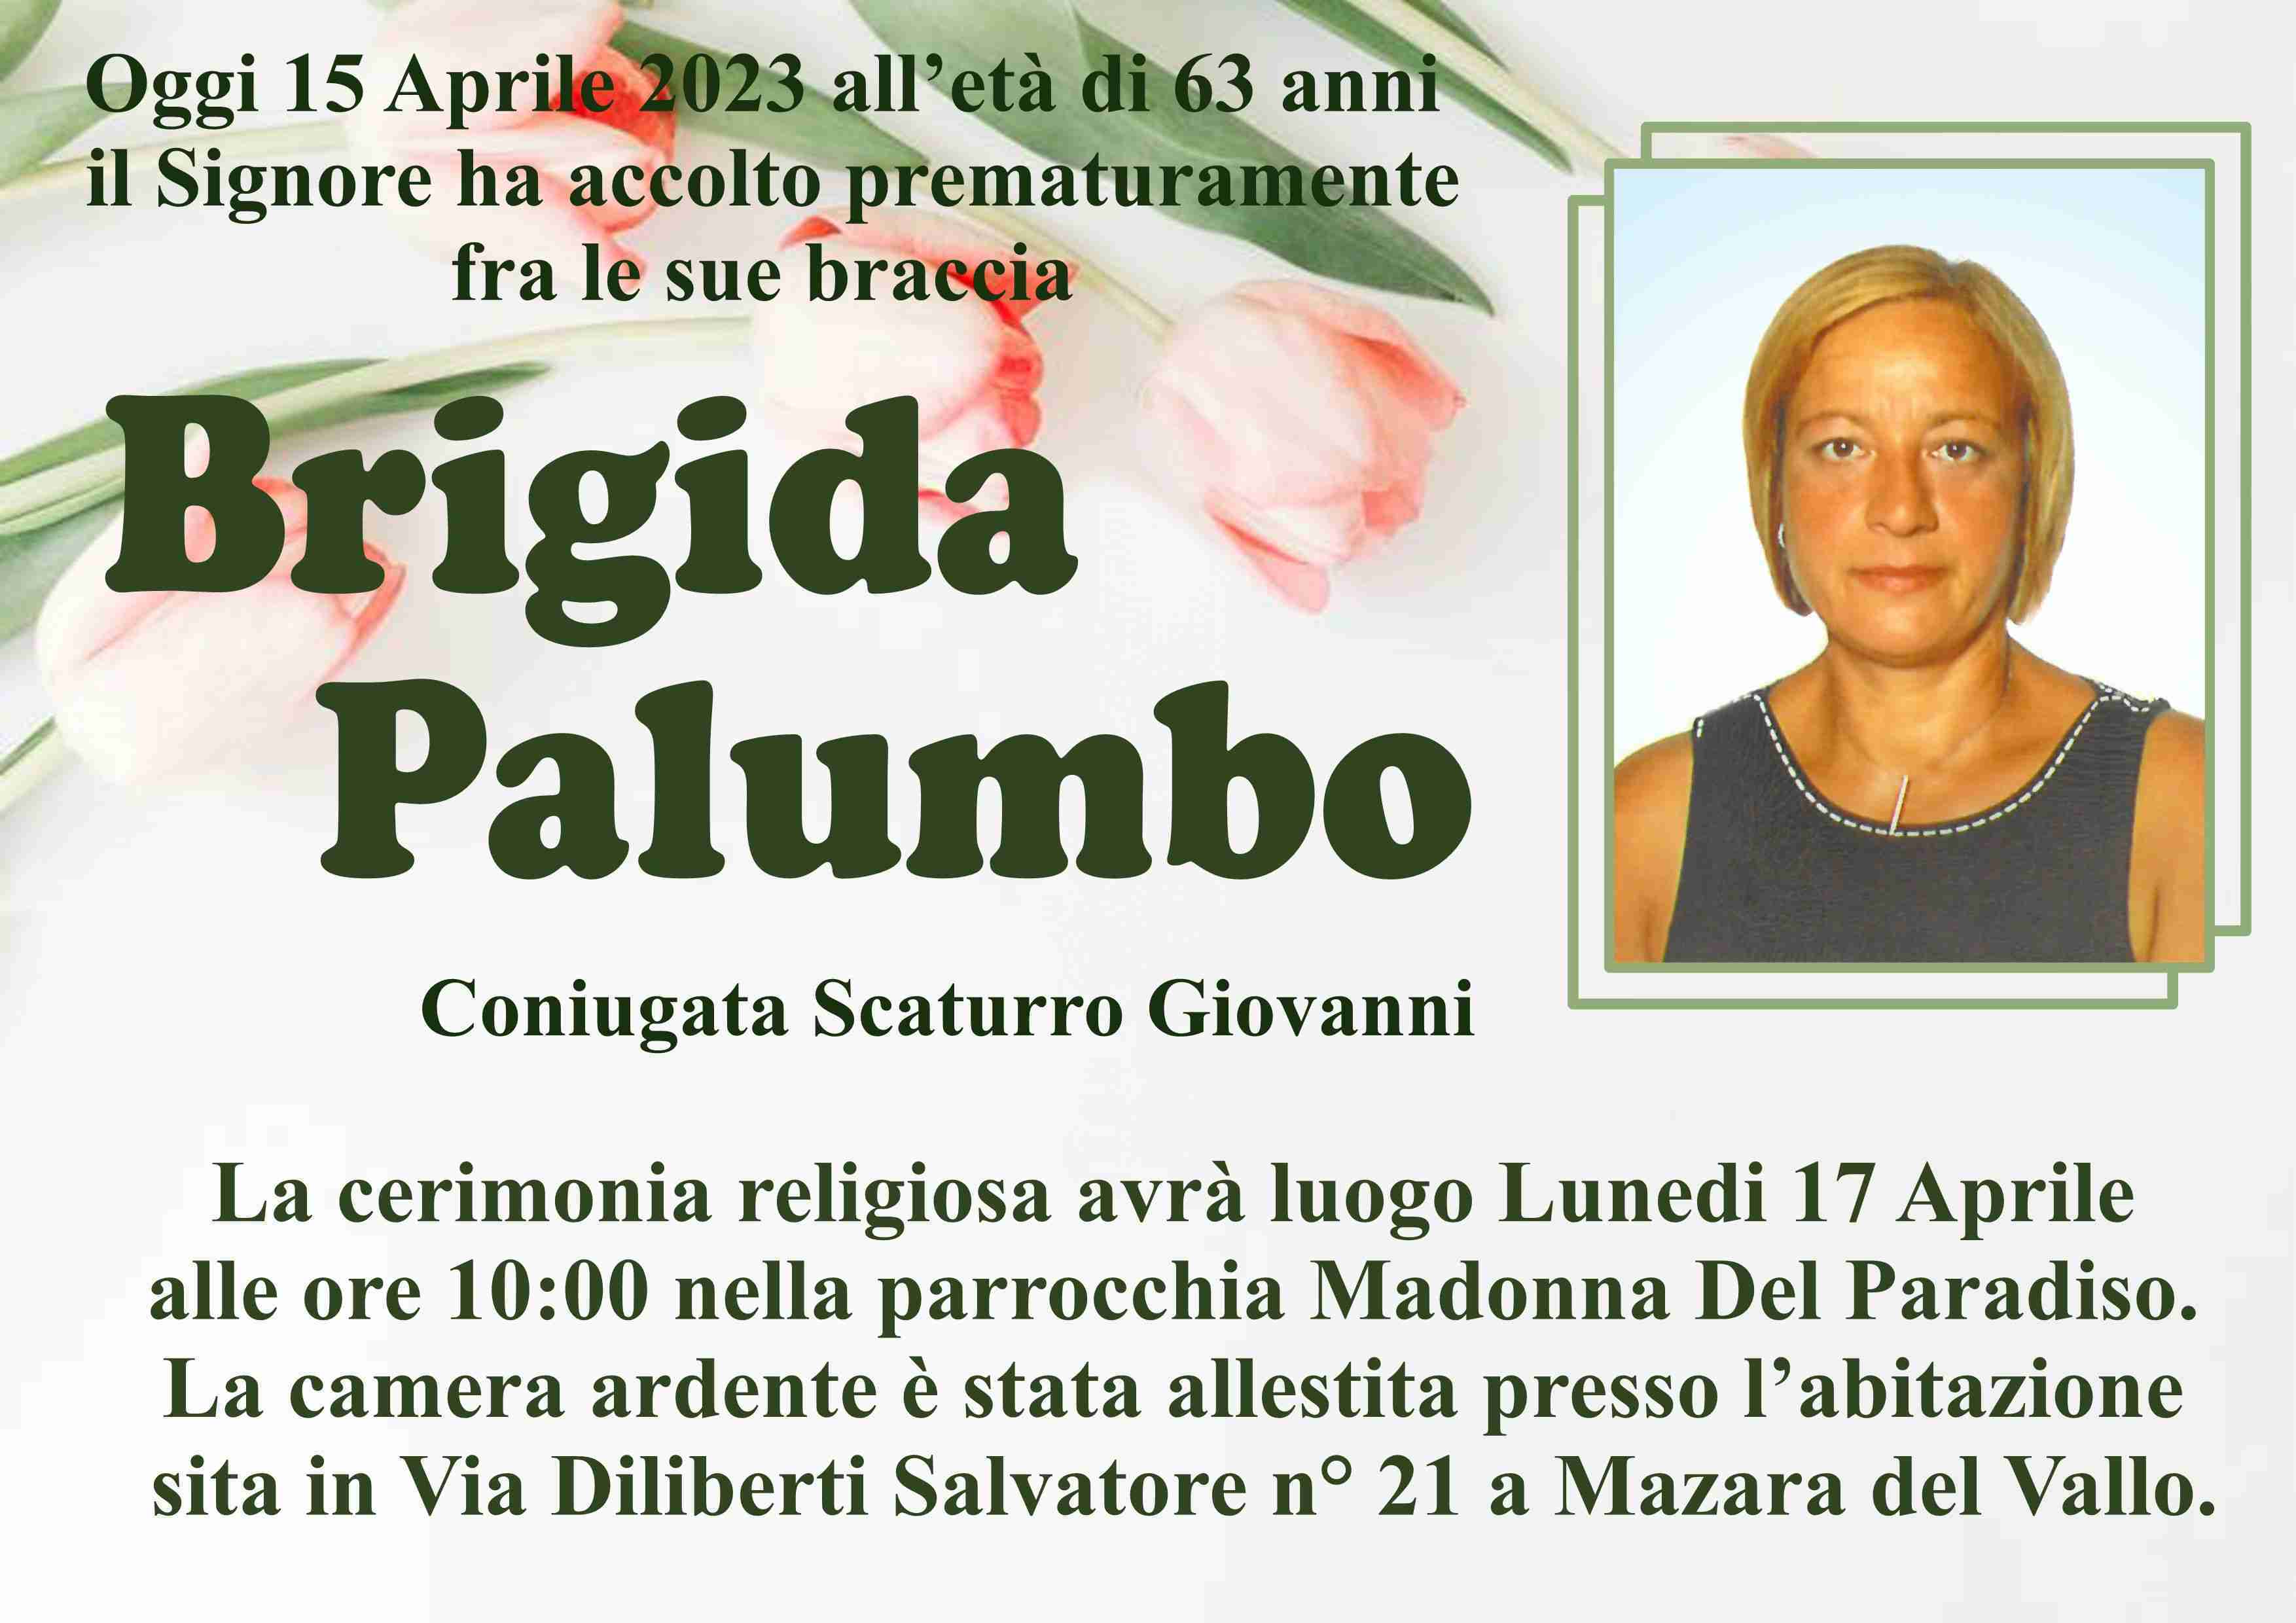 Brigida Palumbo